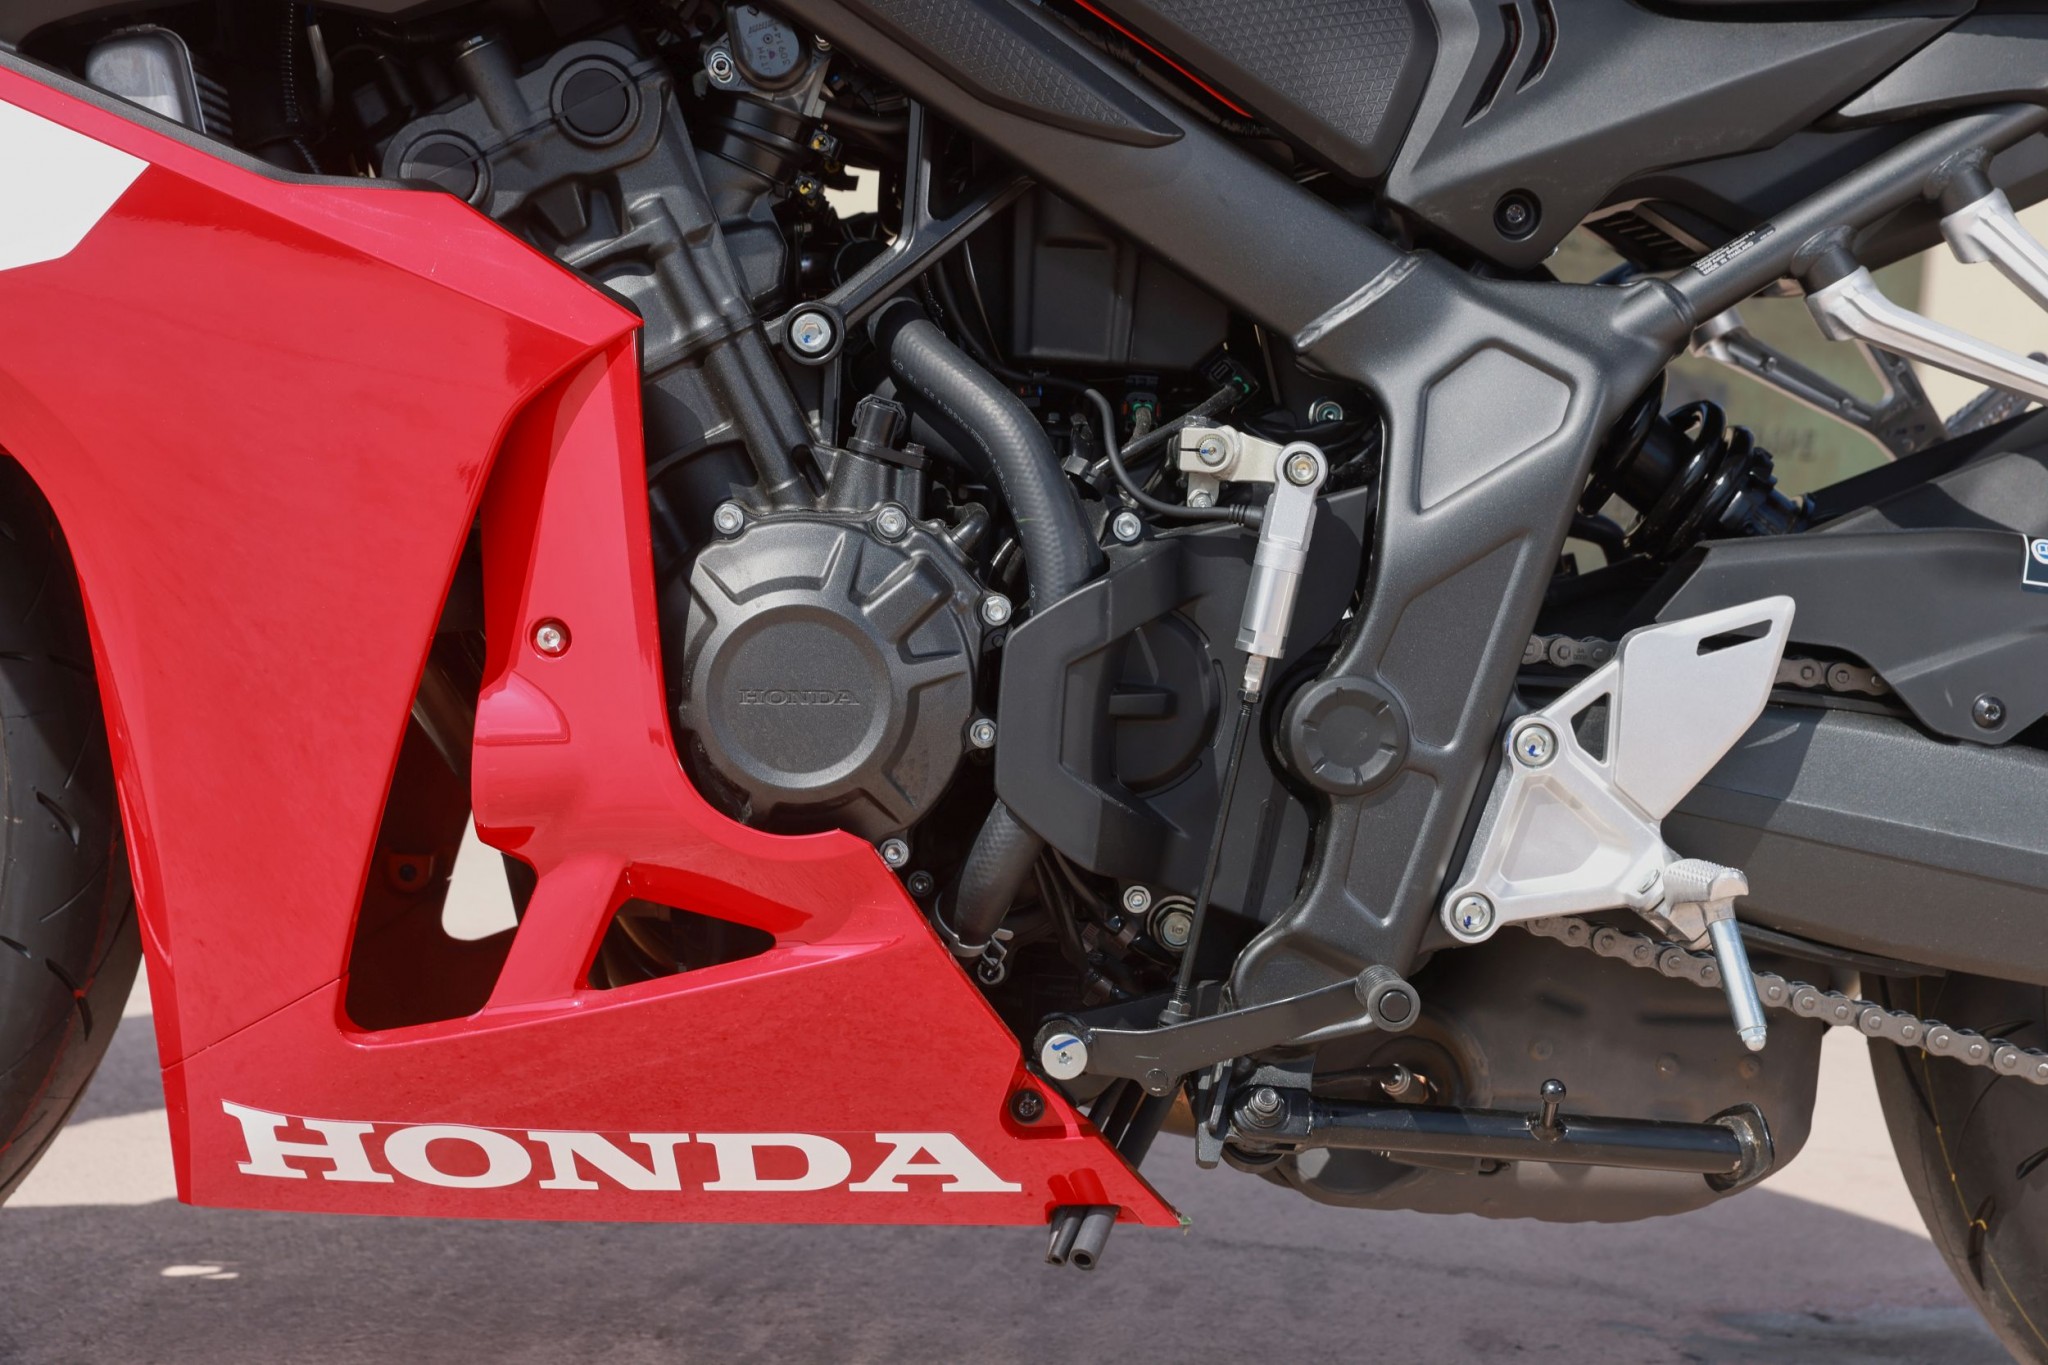 Test elektronske kvačila Honda CBR650R 2024

Honda je nedavno predstavila novu verziju svog popularnog motocikla CBR650R, koji sada dolazi sa elektronskim kvačilom, poznatim kao E-Clutch. Ova inovacija obećava da će olakšati vožnju omogućavajući vozačima da menjaju brzine bez potrebe za ručnim korišćenjem kvačila. 

Elektronsko kvačilo funkcioniše tako što automatski reguliše pritisak potreban za aktiviranje kvačila, što omogućava glatke promene brzina bez prekida u isporuci snage. Ovo je posebno korisno pri vožnji u gradu, gde česte promene brzina mogu biti naporne i otežavaju koncentraciju na saobraćaj.

Testiranje ovog sistema pokazalo je da E-Clutch ne samo da olakšava upravljanje motociklom, već i povećava sigurnost vožnje. Vozači mogu da se fokusiraju na okolinu bez brige o mehaničkim aspektima vožnje, što je posebno važno za manje iskusne vozače.

Honda CBR650R sa elektronskim kvačilom biće dostupna na tržištu od 2024. godine i očekuje se da će privući veliki broj kupaca, kako iskusnih tako i onih koji tek ulaze u svet motociklizma. Ovaj model predstavlja značajan korak napred u tehnologiji motocikala i potencijalno postavlja nove standarde u industriji. - Слика 11